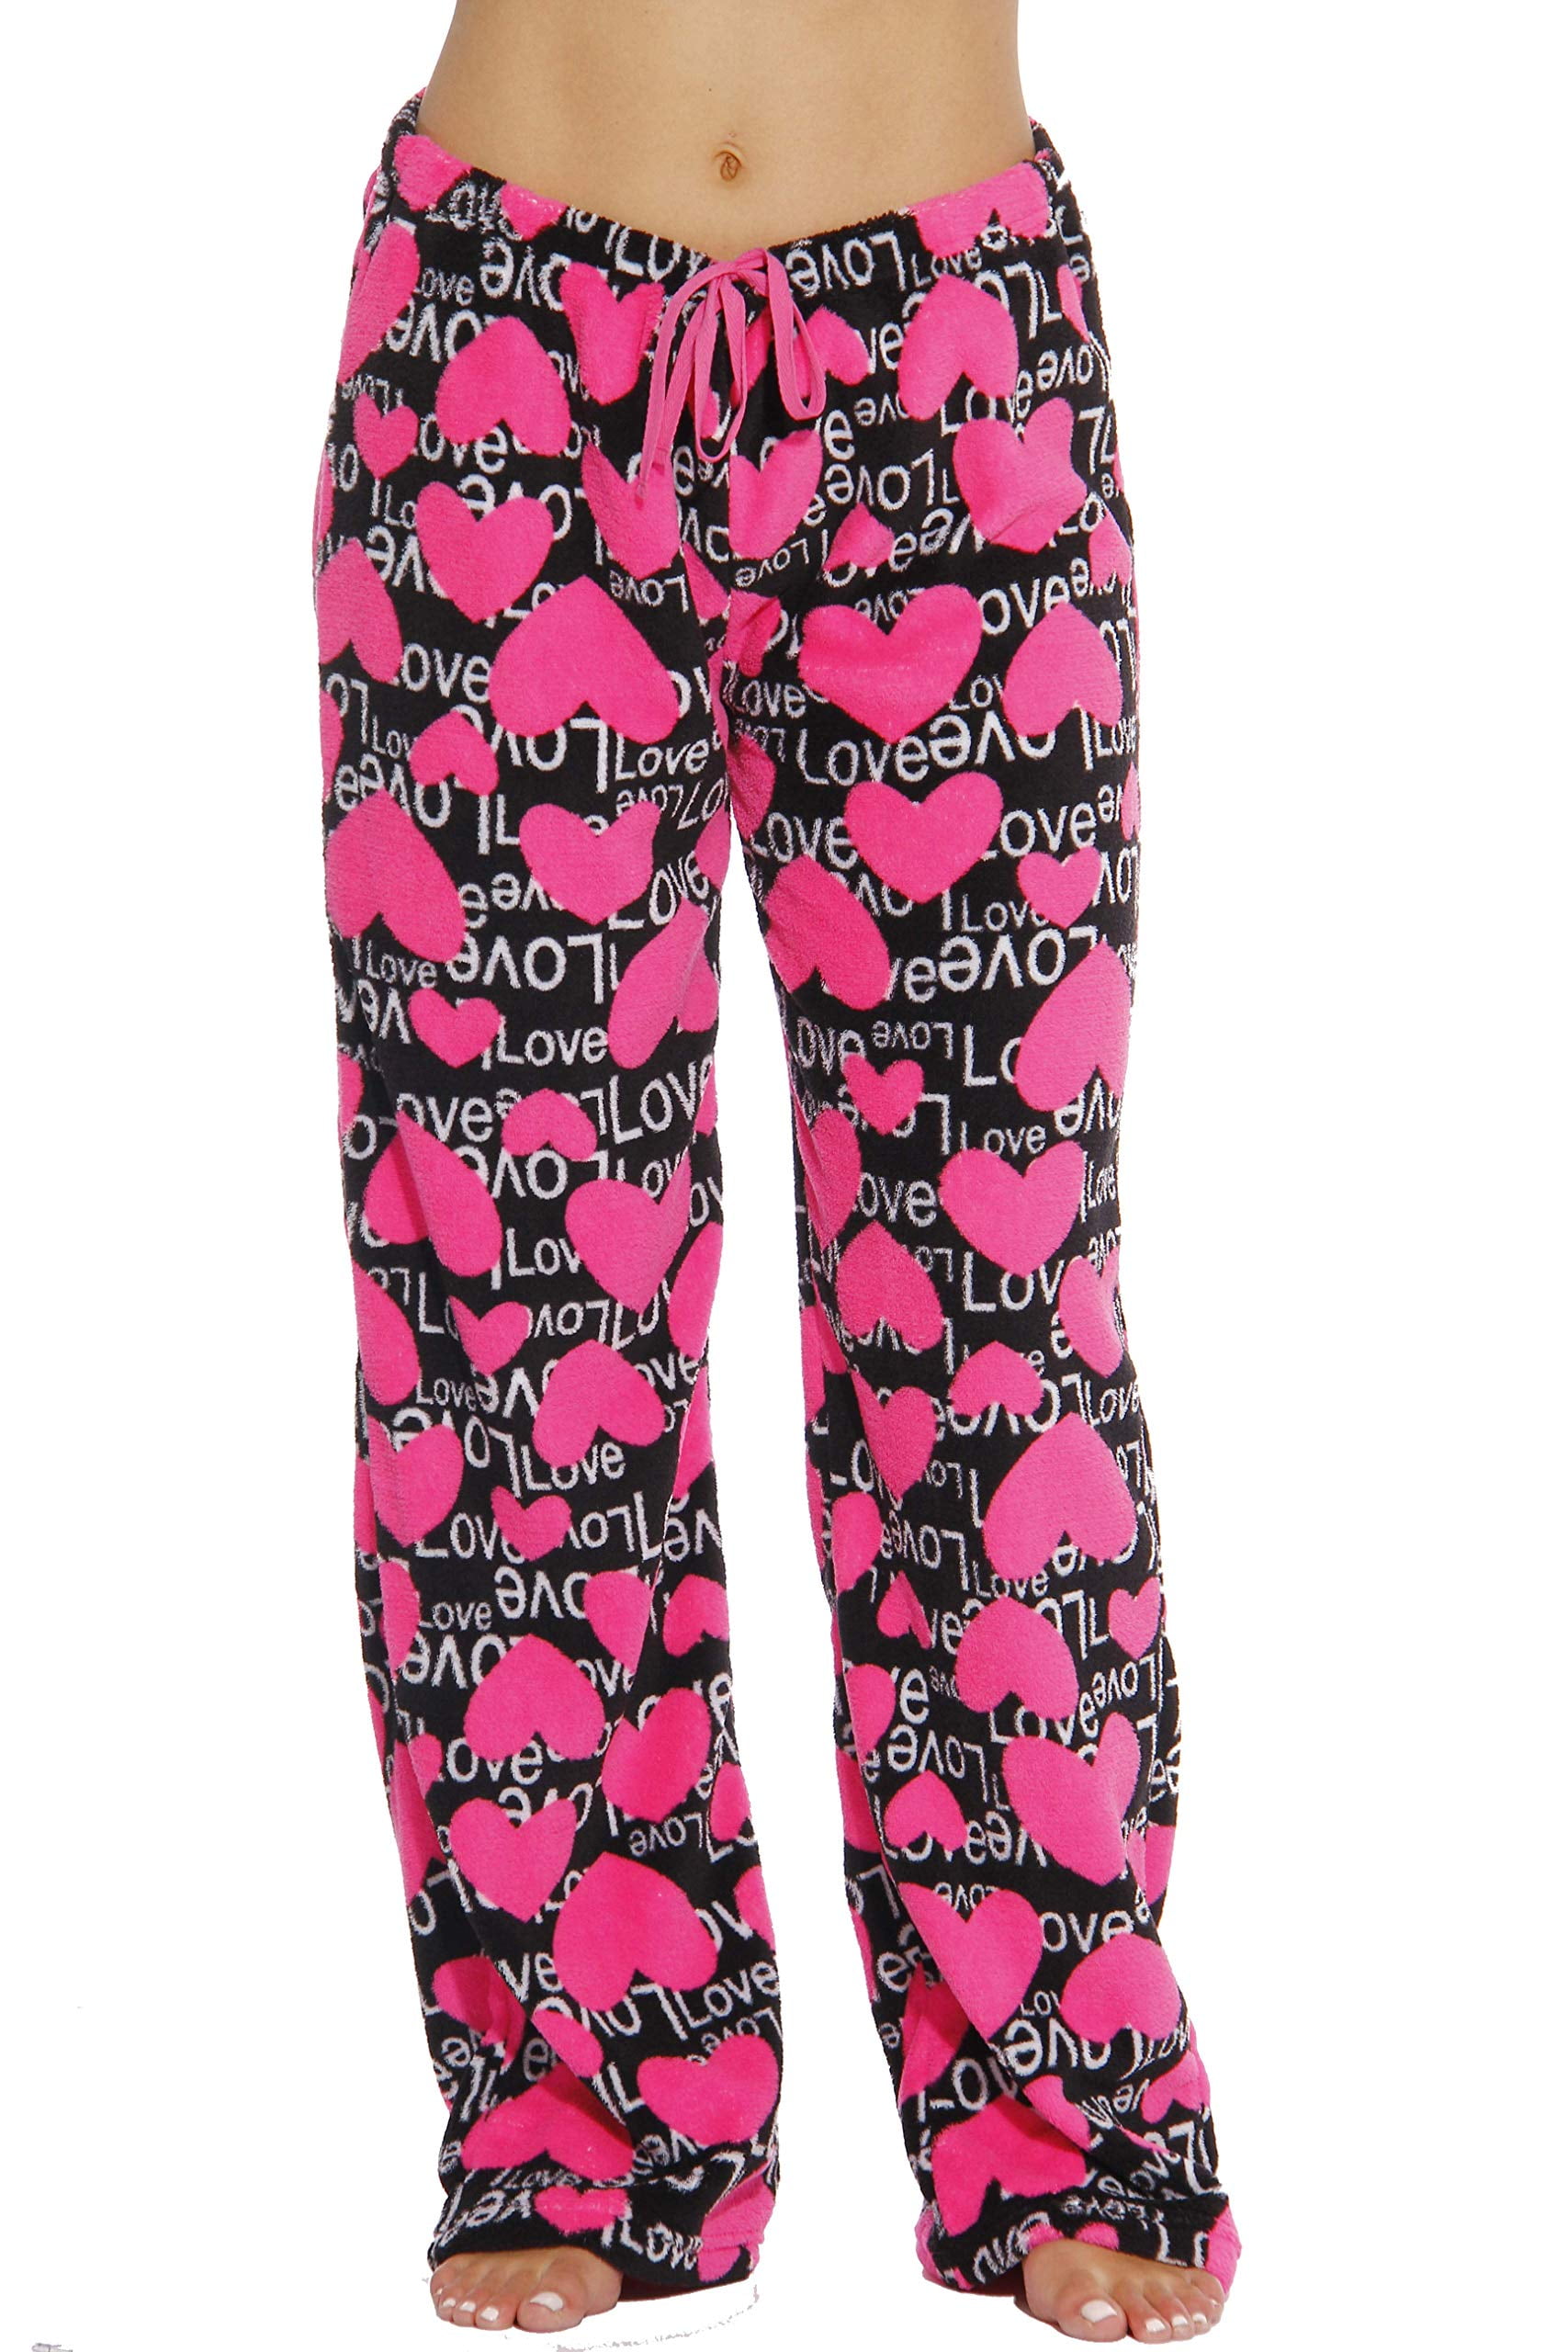 Women's Plush Pajama Pants - Petite to Plus Size Pajamas (Leopard